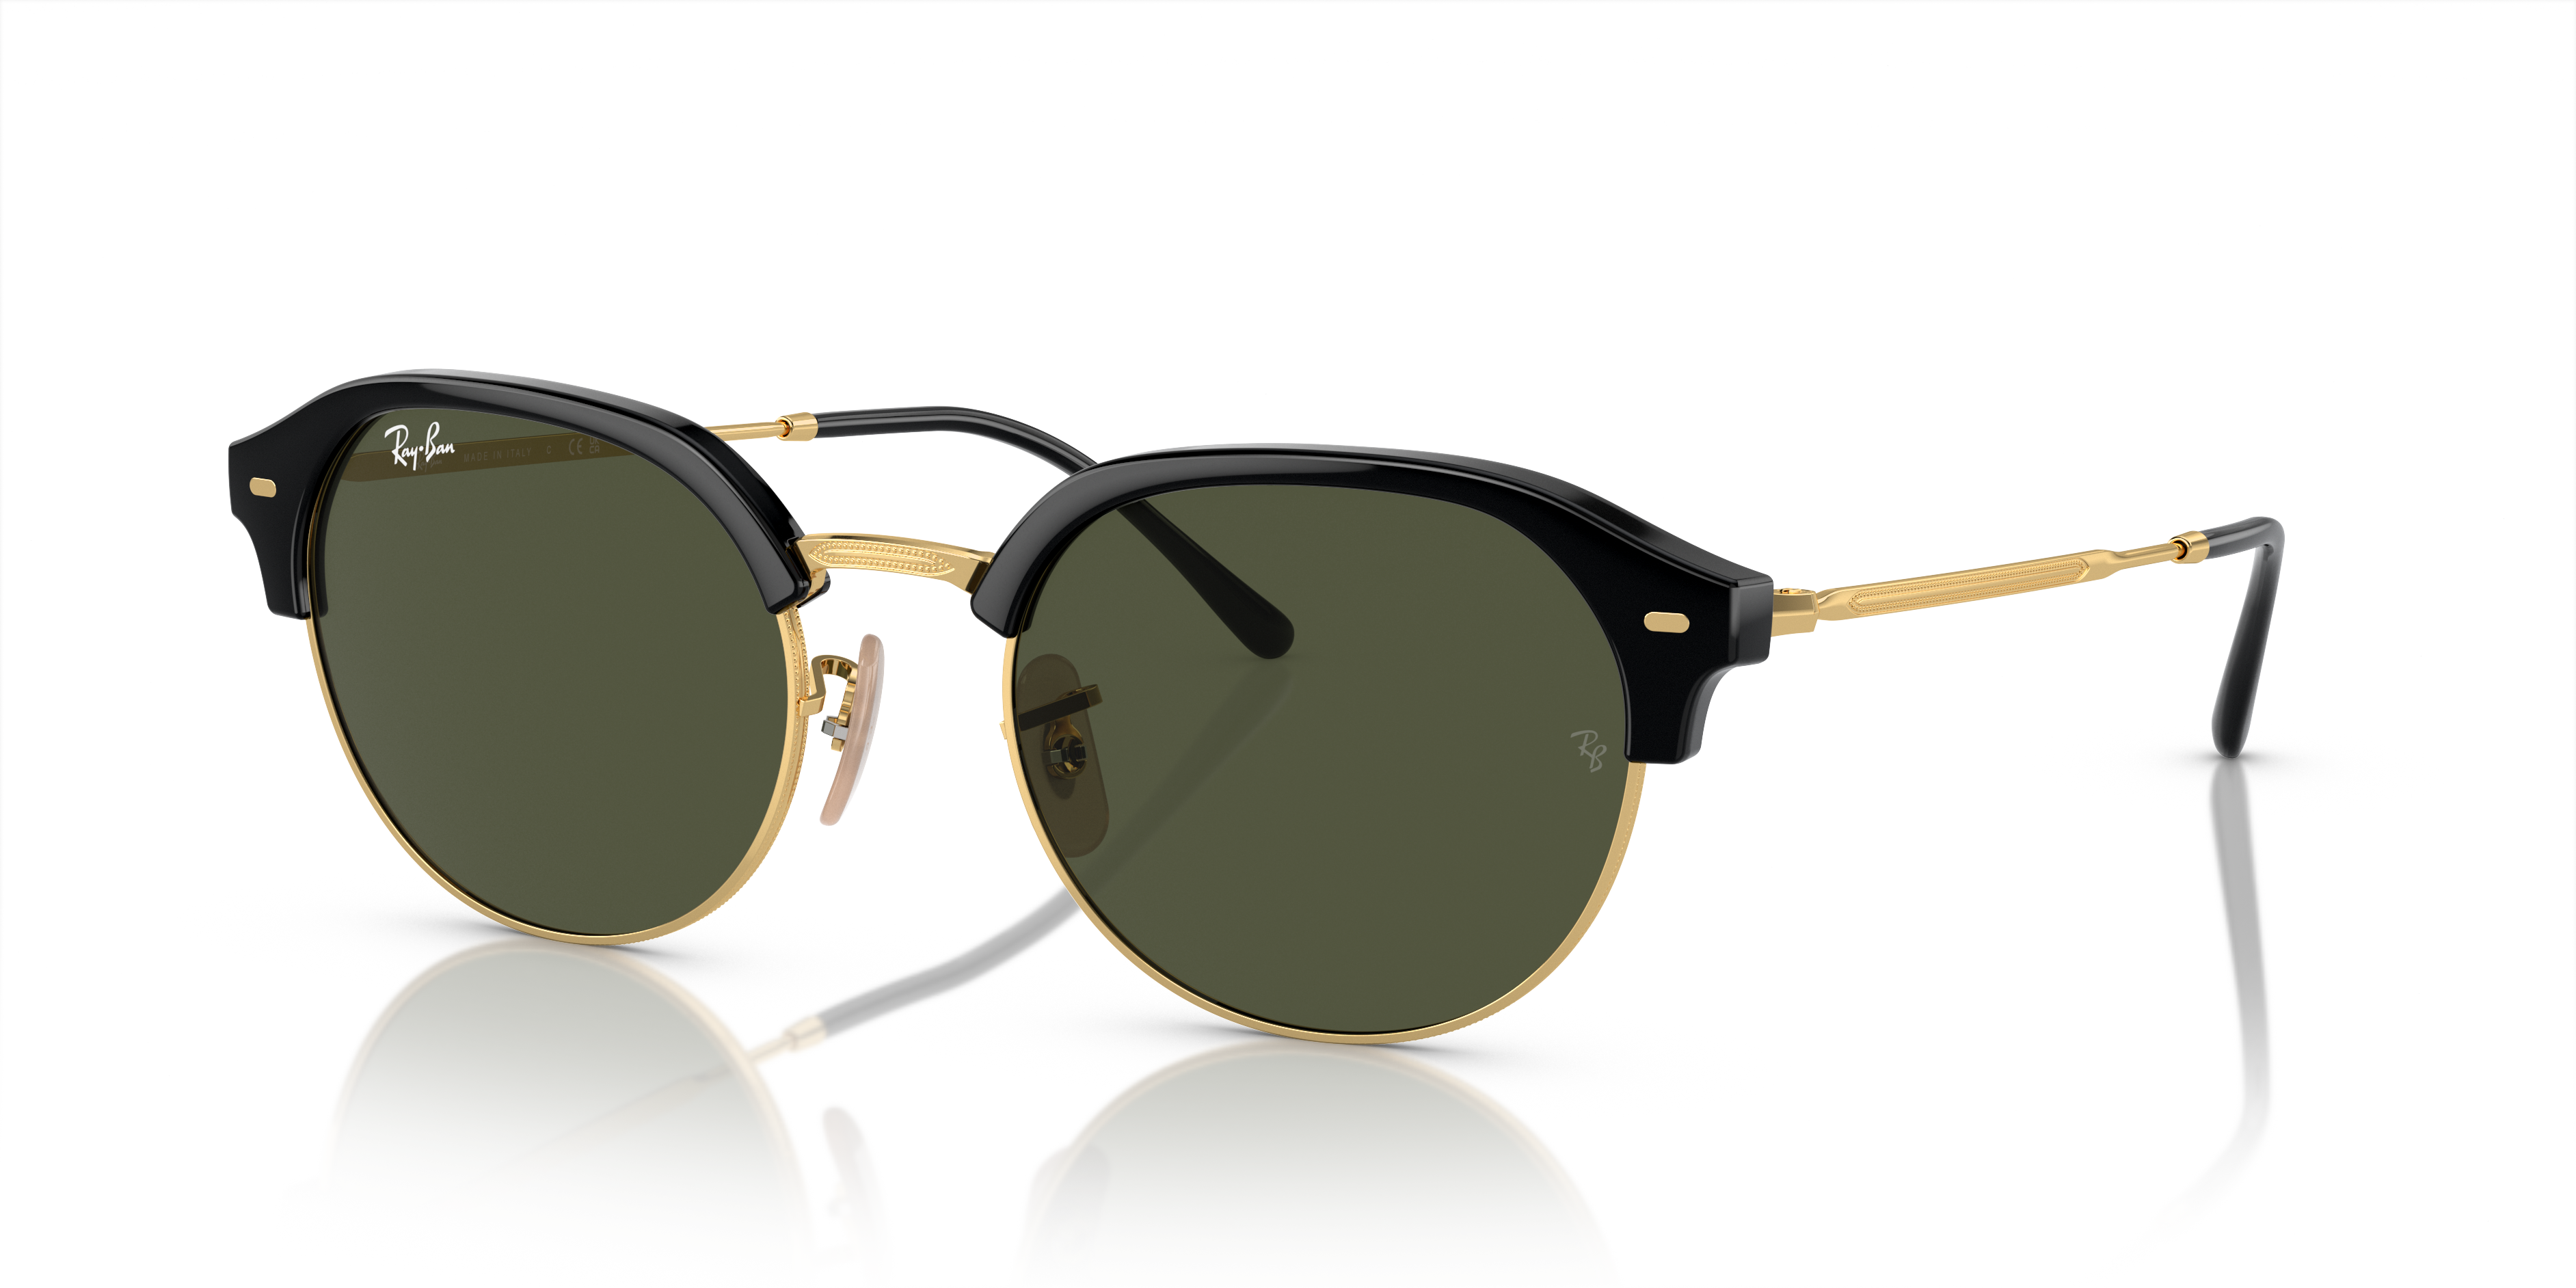 Update 207+ sunglasses sites best